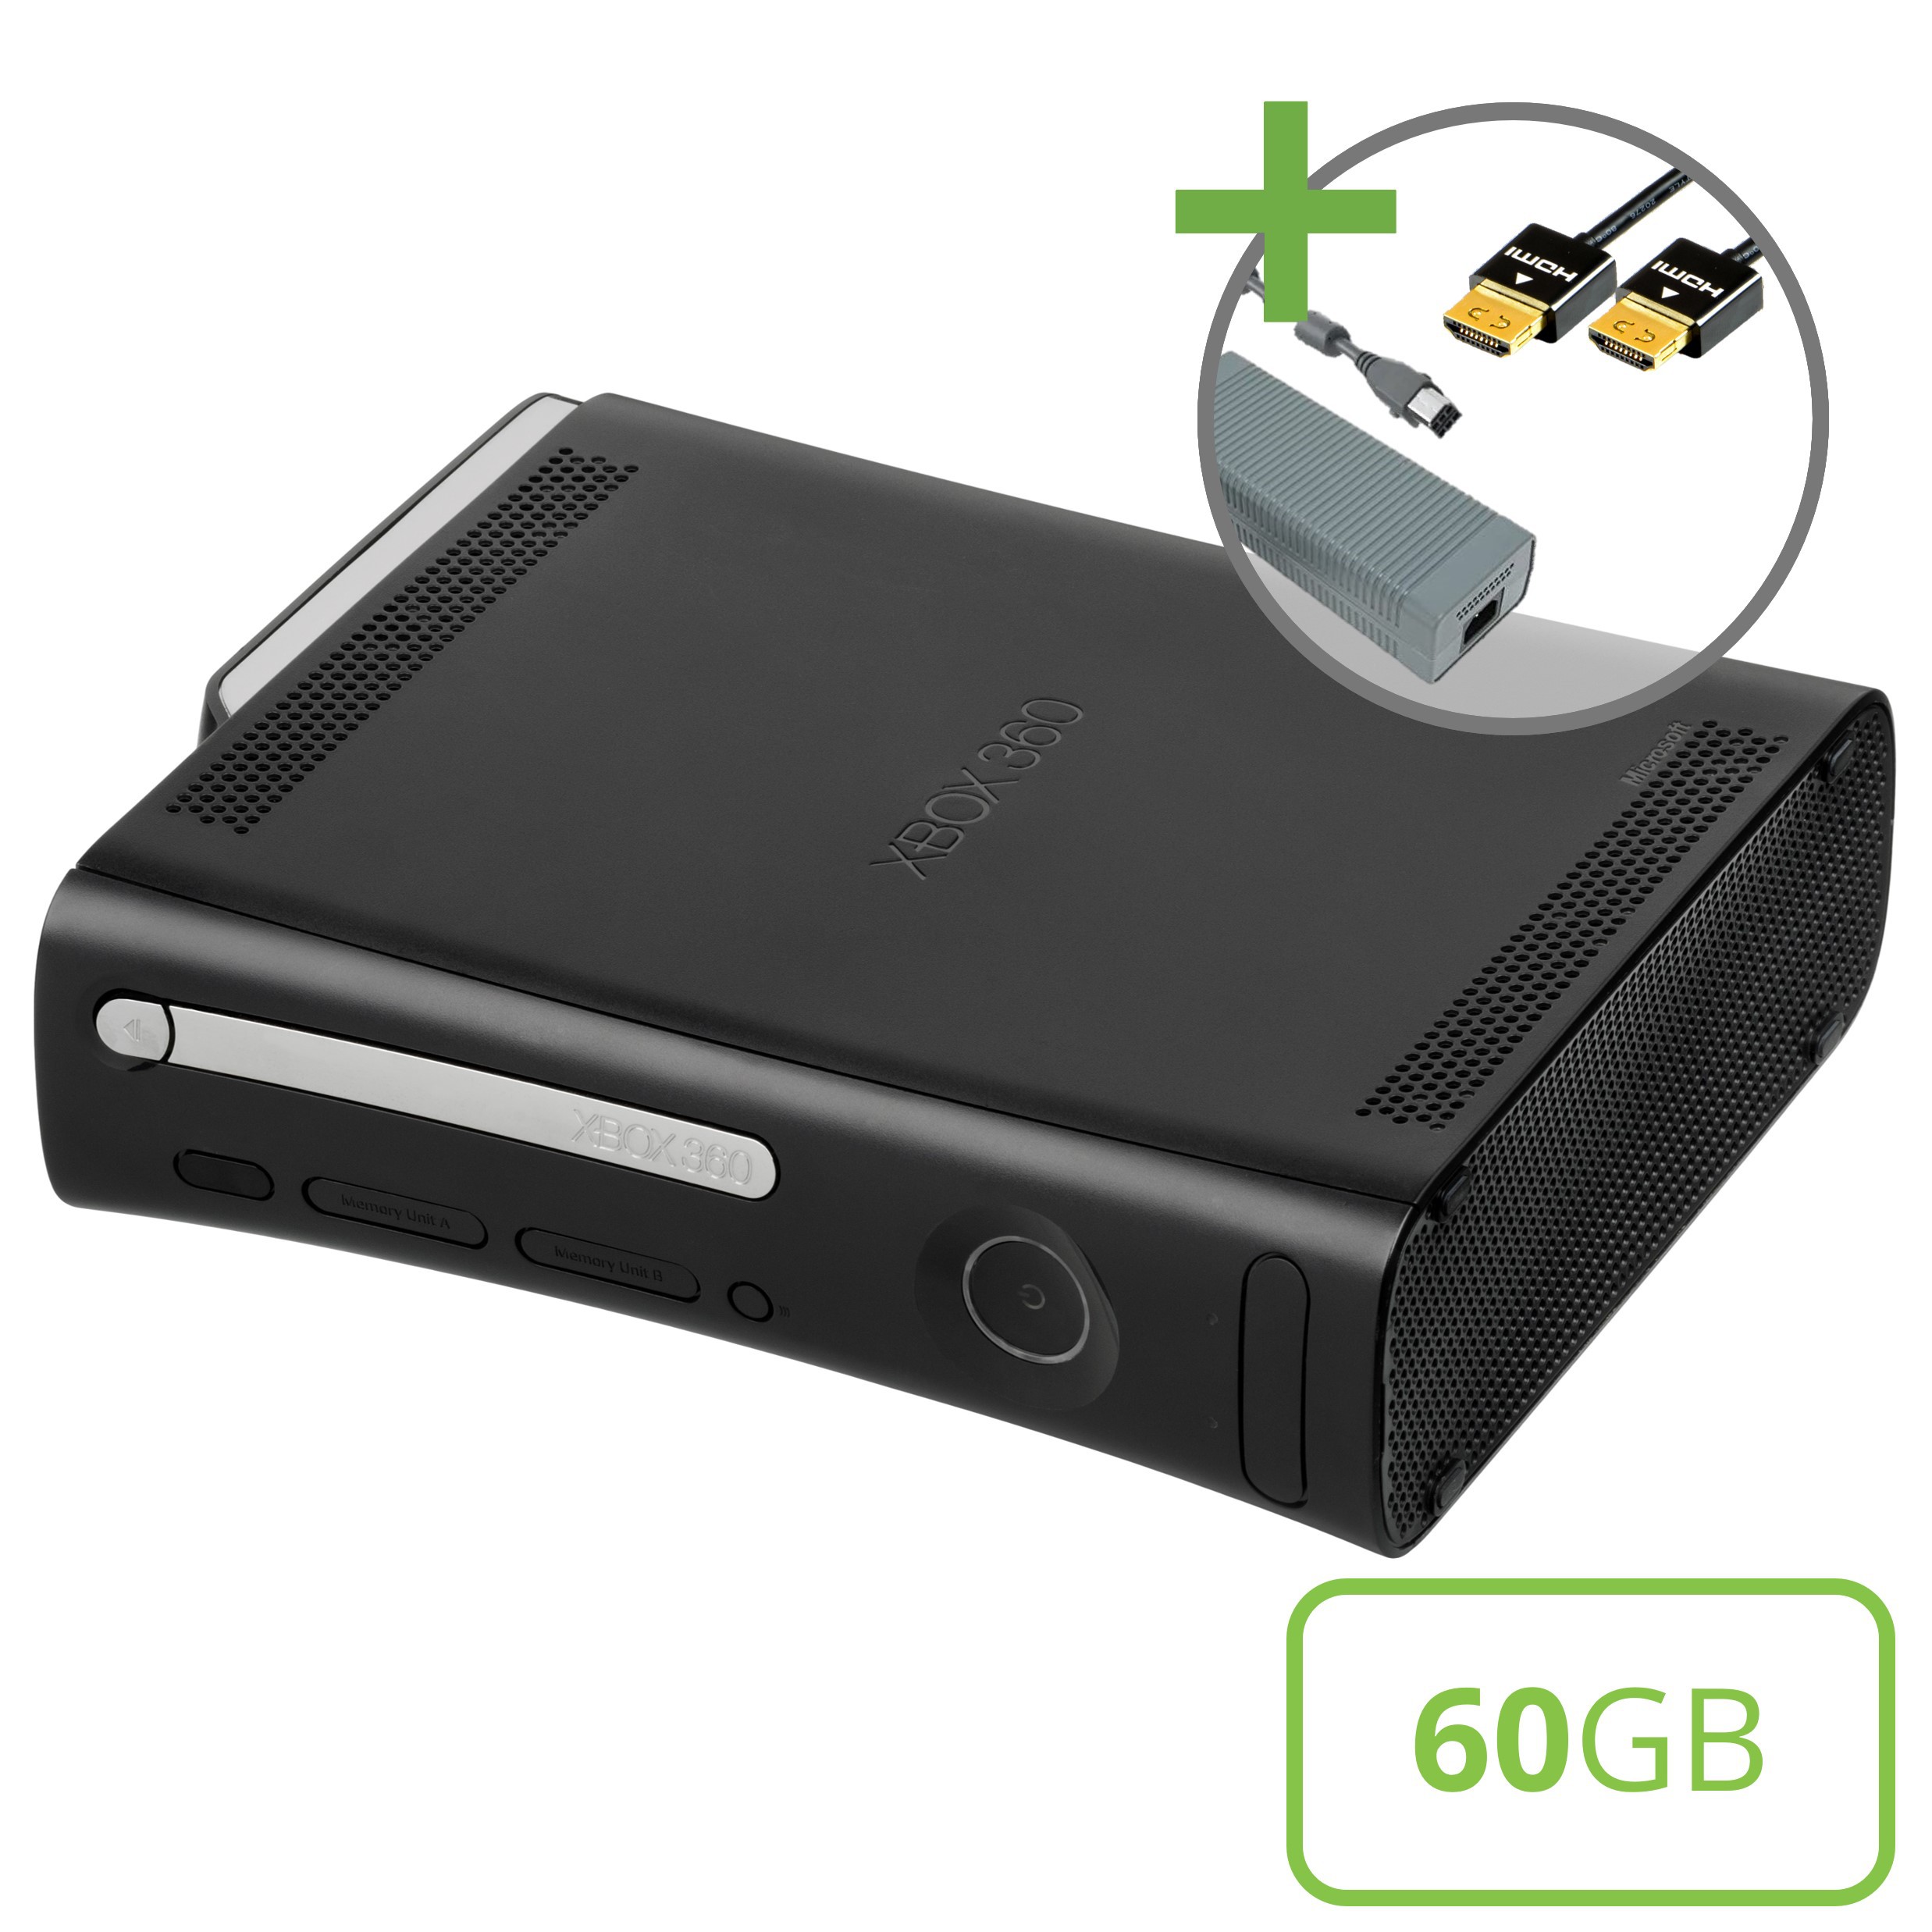 Microsoft Xbox 360 Elite Console (60GB) - Xbox 360 Hardware - 2